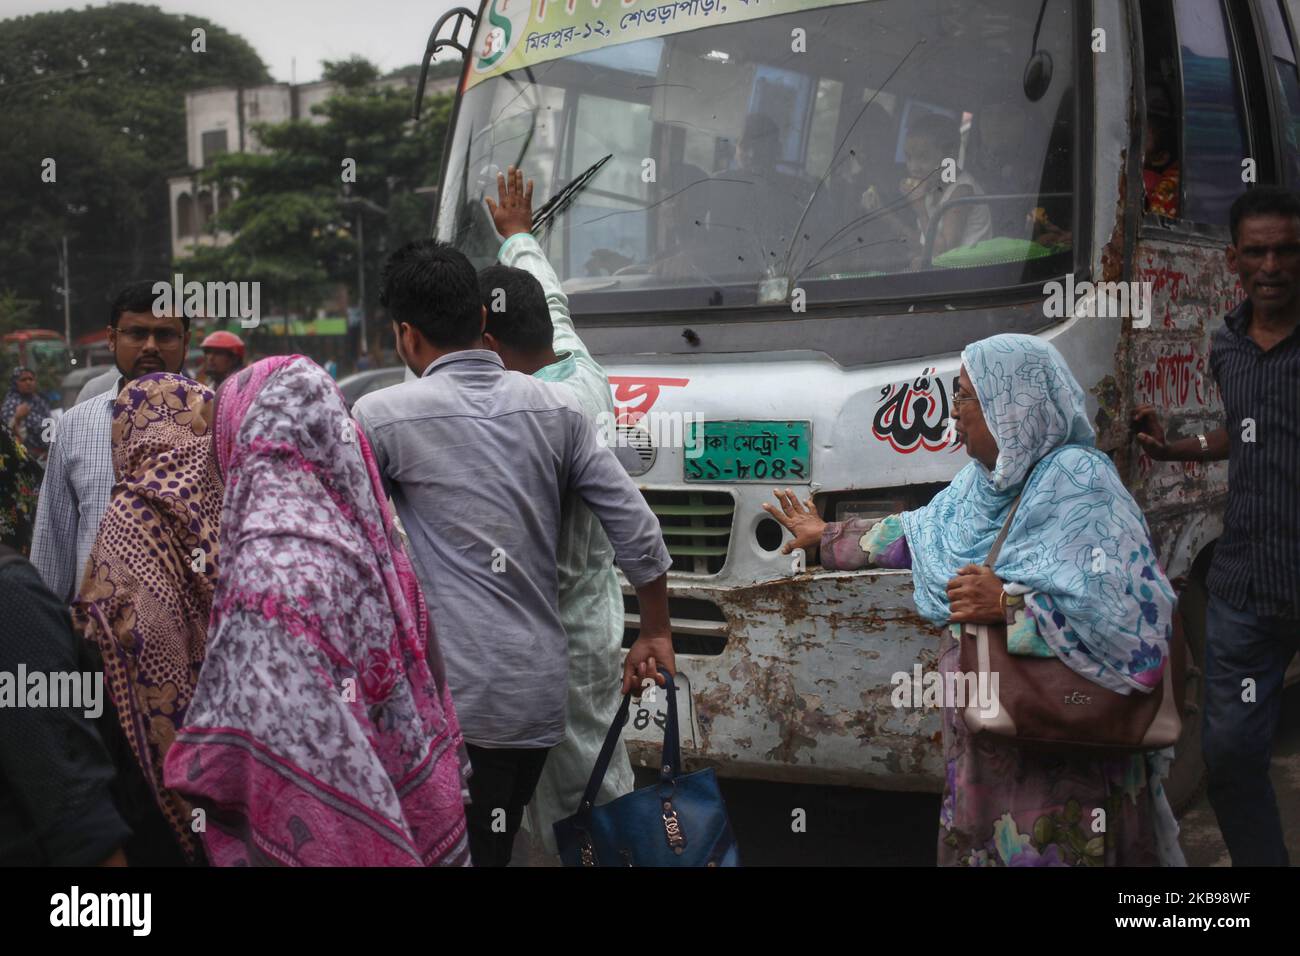 Menschen riskieren ihr Leben, als sie am 26. Oktober 2019 eine belebte Straße in Dhaka, Bangladesch, überqueren. Tausende von Menschen, darunter auch Kinder, starben jedes Jahr an den Folgen eines Verkehrsunfalls in Bangladesch. (Foto von Syed Mahamudur Rahman/NurPhoto) Stockfoto